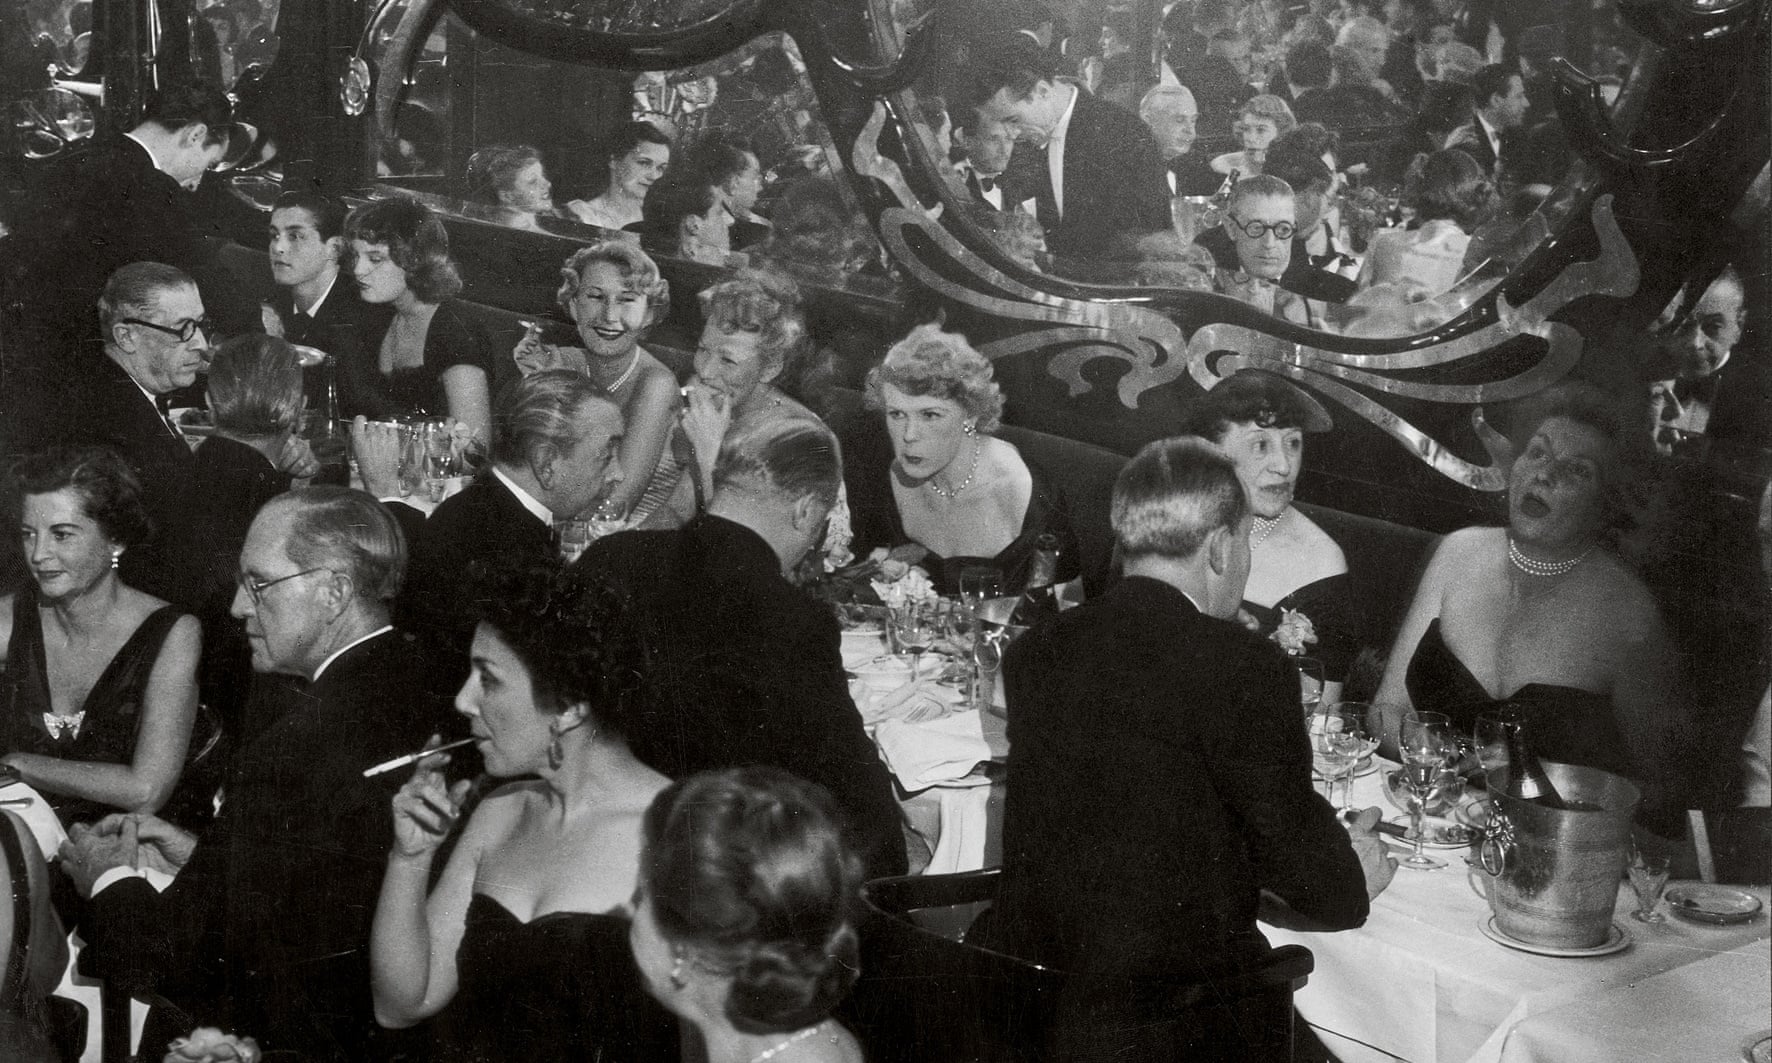 Gala soiree at Maxim’s, 1949. Photograph- Estate Brassaï Succession